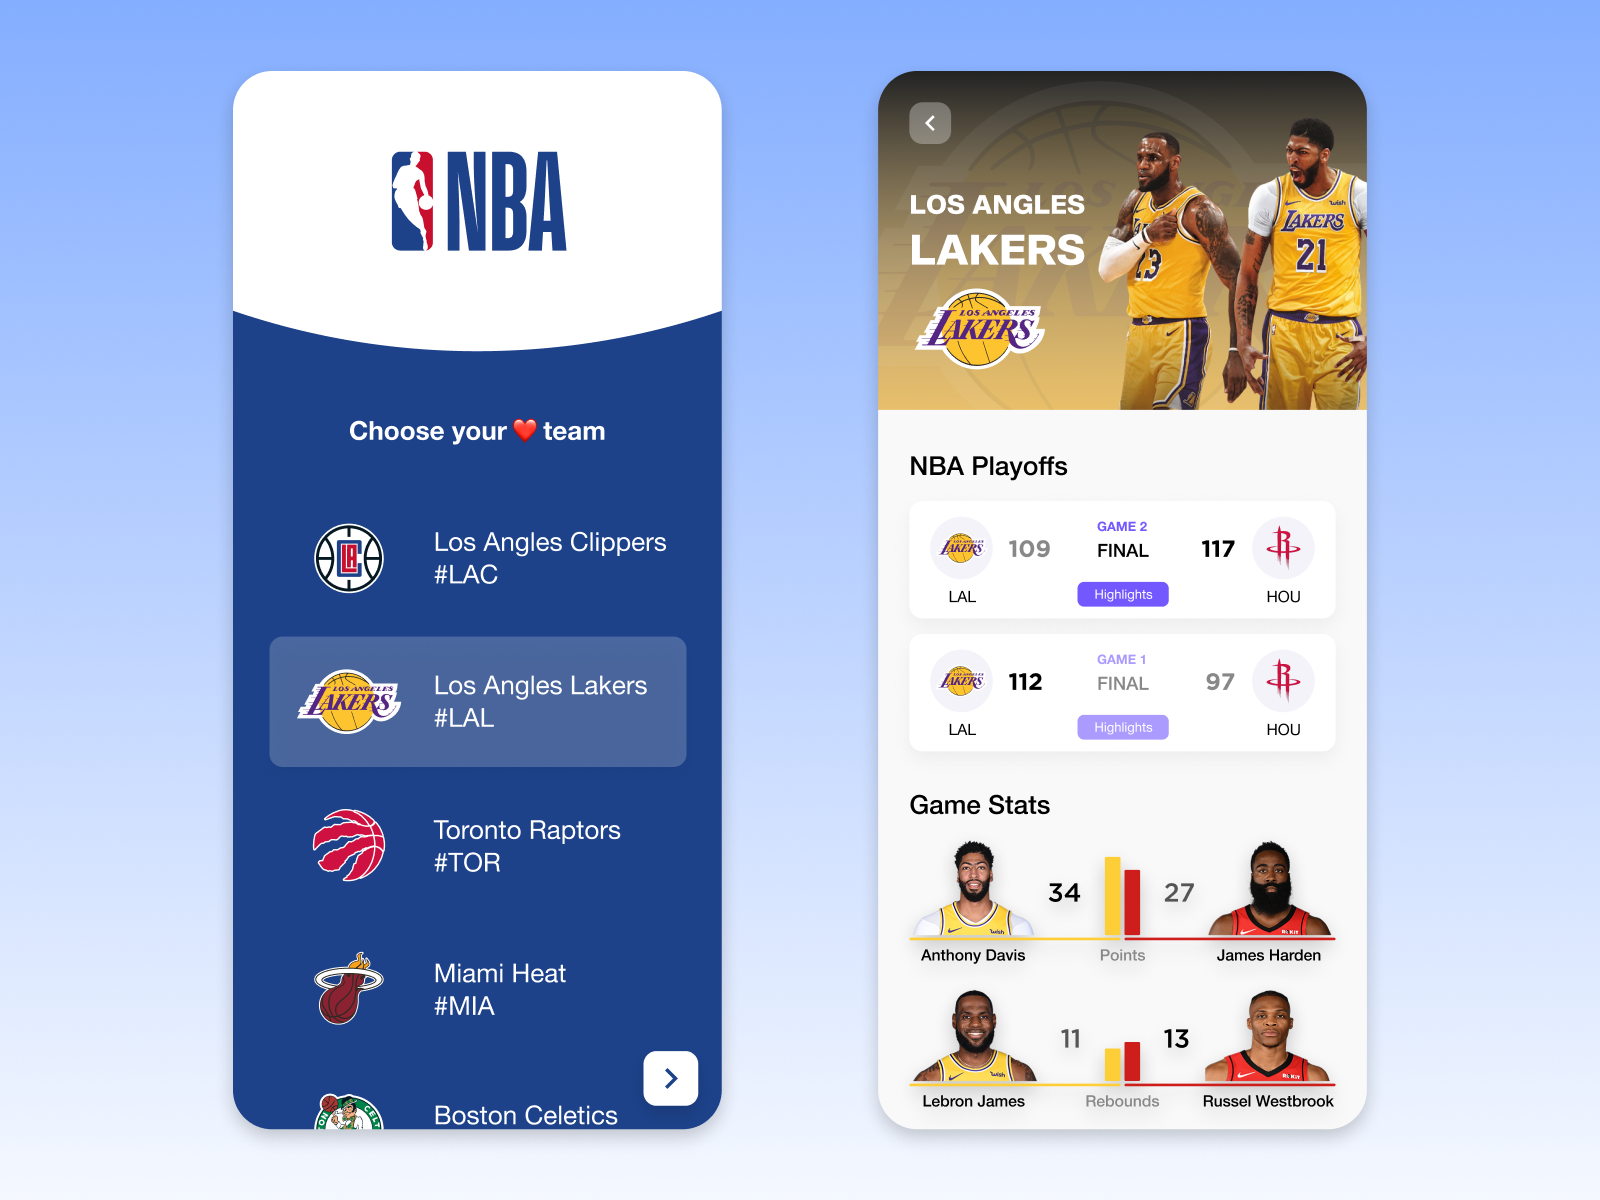 NBA Live Scores Mobile App by Ashwin K S on Dribbble